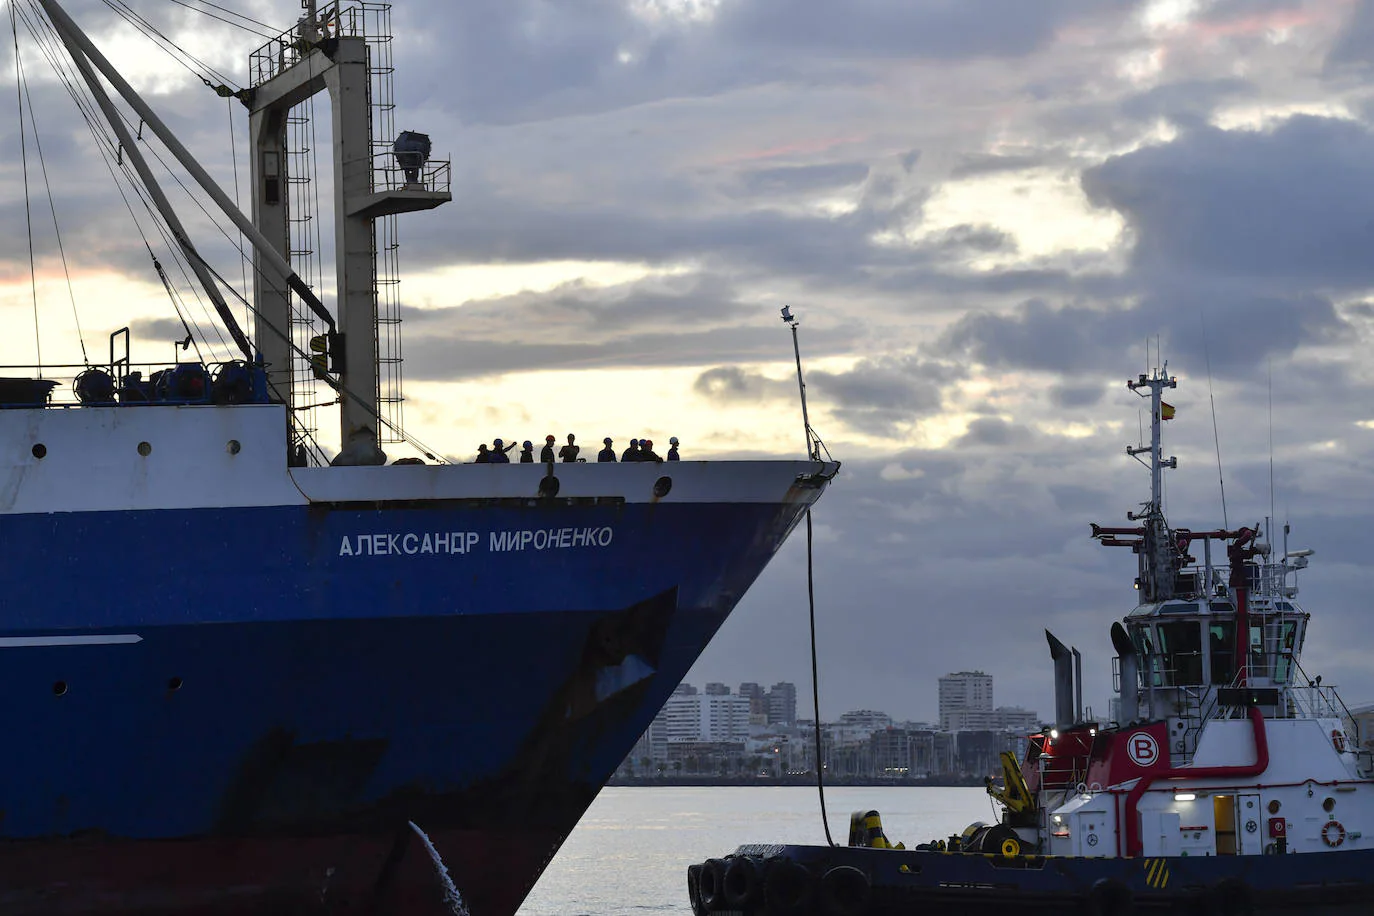 Fotos: Llegada del buque ruso Aleksanr Moronenko al Puerto de Las Palmas